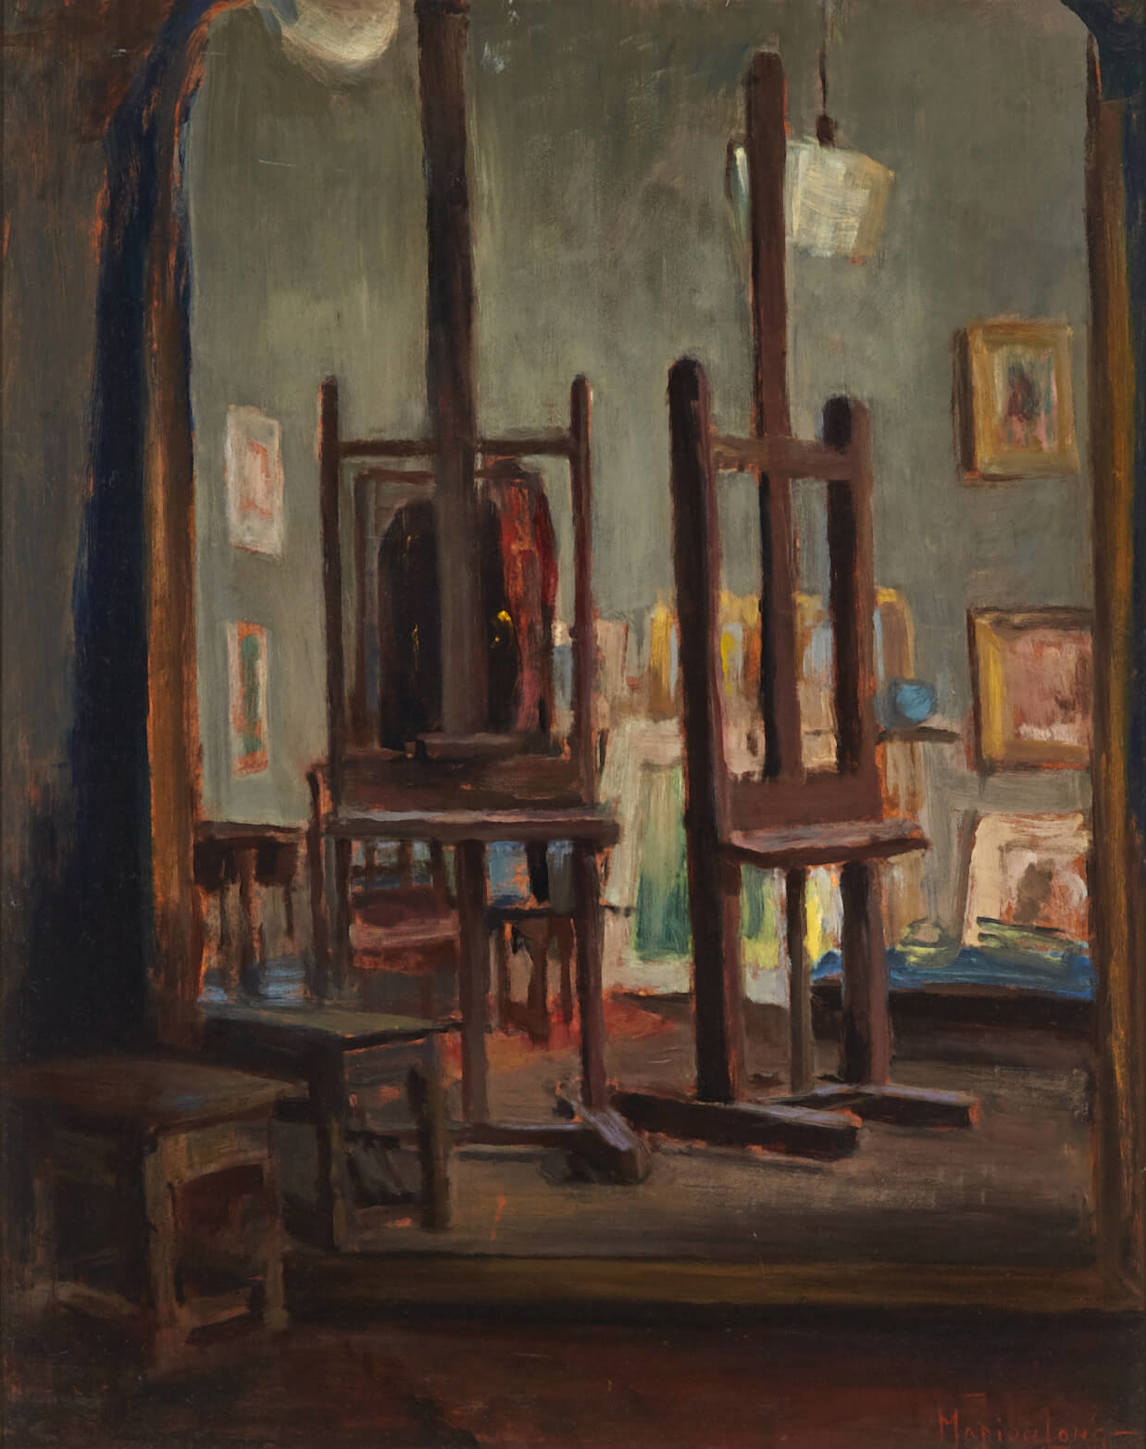 Marion Long, The Artist's Studio (Le studio de l’artiste), s.d.